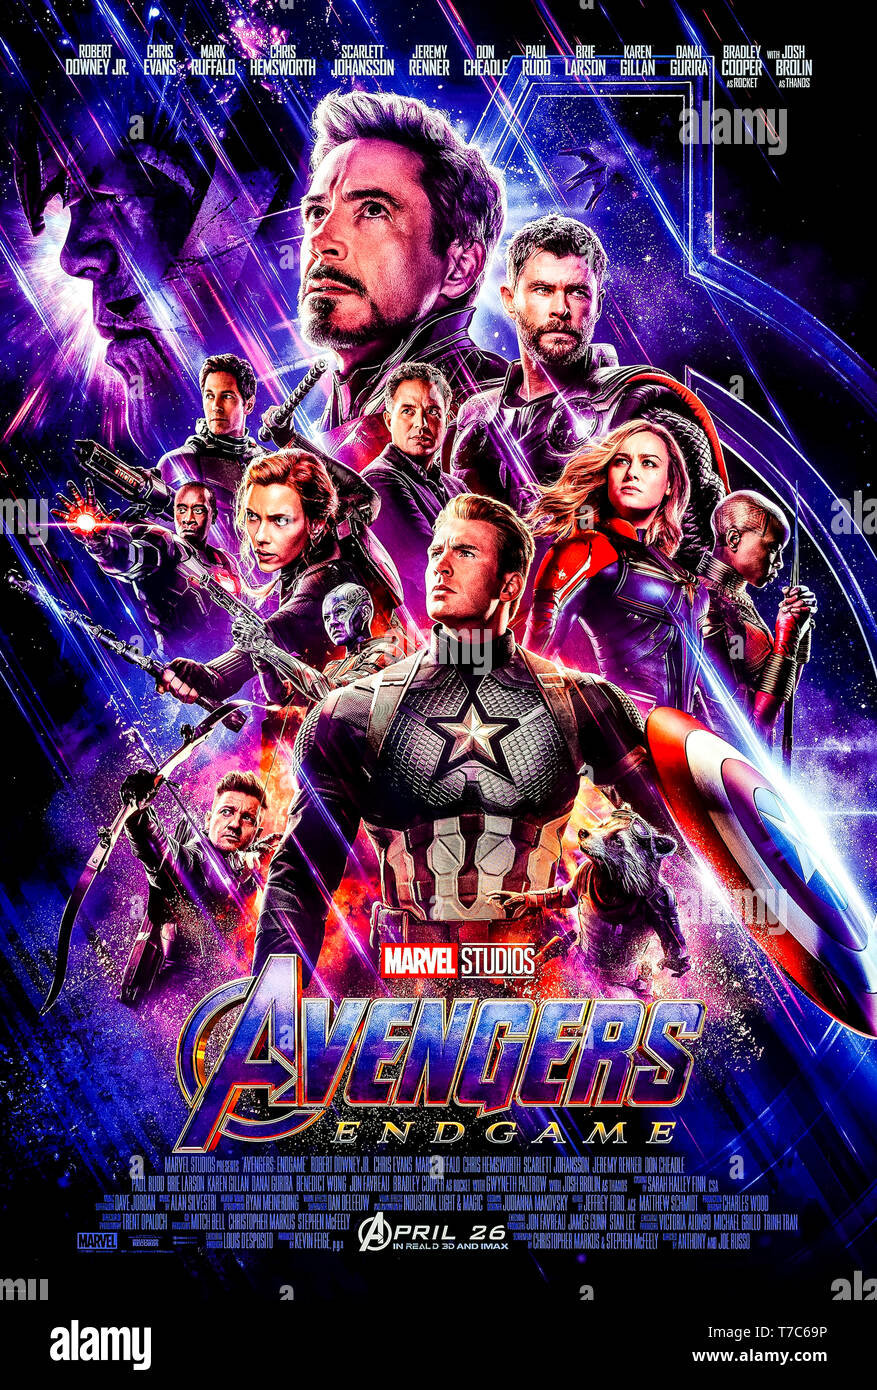 Avengers: Endgame (2019) unter der Regie von Anthony und Joe Russo, Hauptdarsteller Bradley Cooper, Brie Larson, Chris Hemsworth ist. Epische Abschluss und 22 Film in der Marvel filmischen Universums. Stockfoto